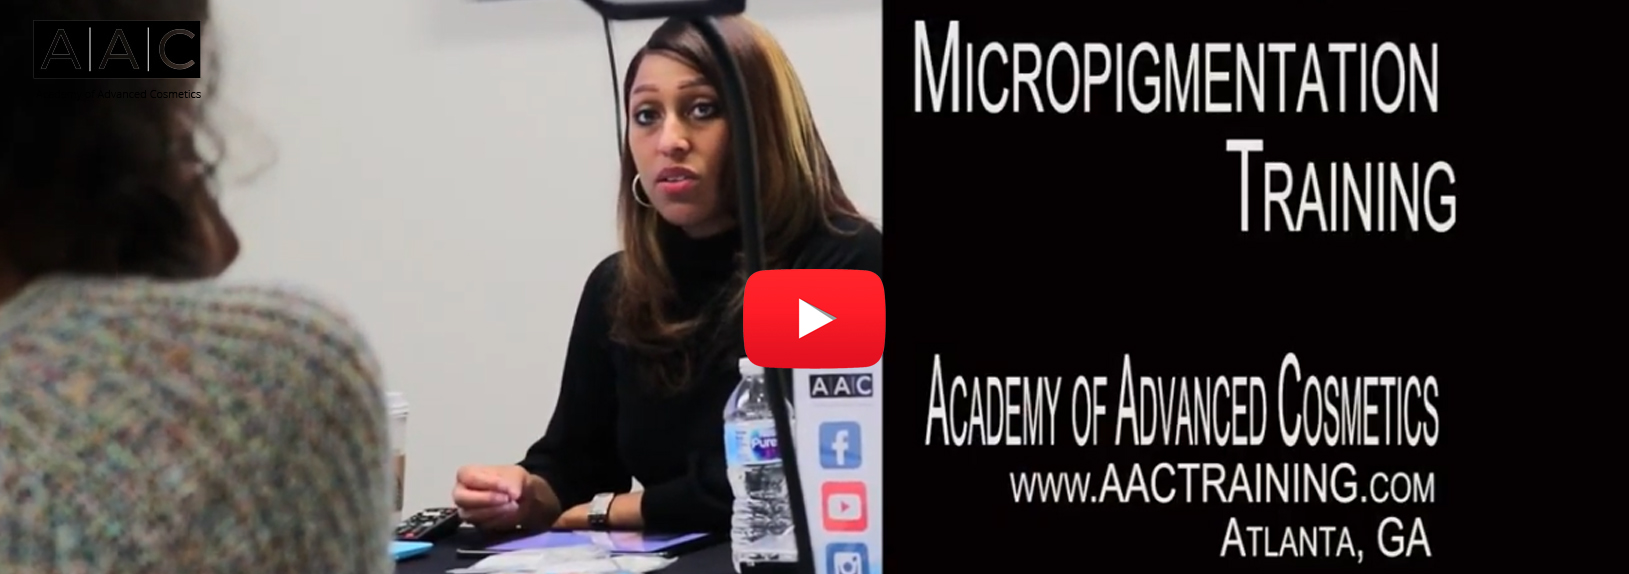 Micropigmentation video cover